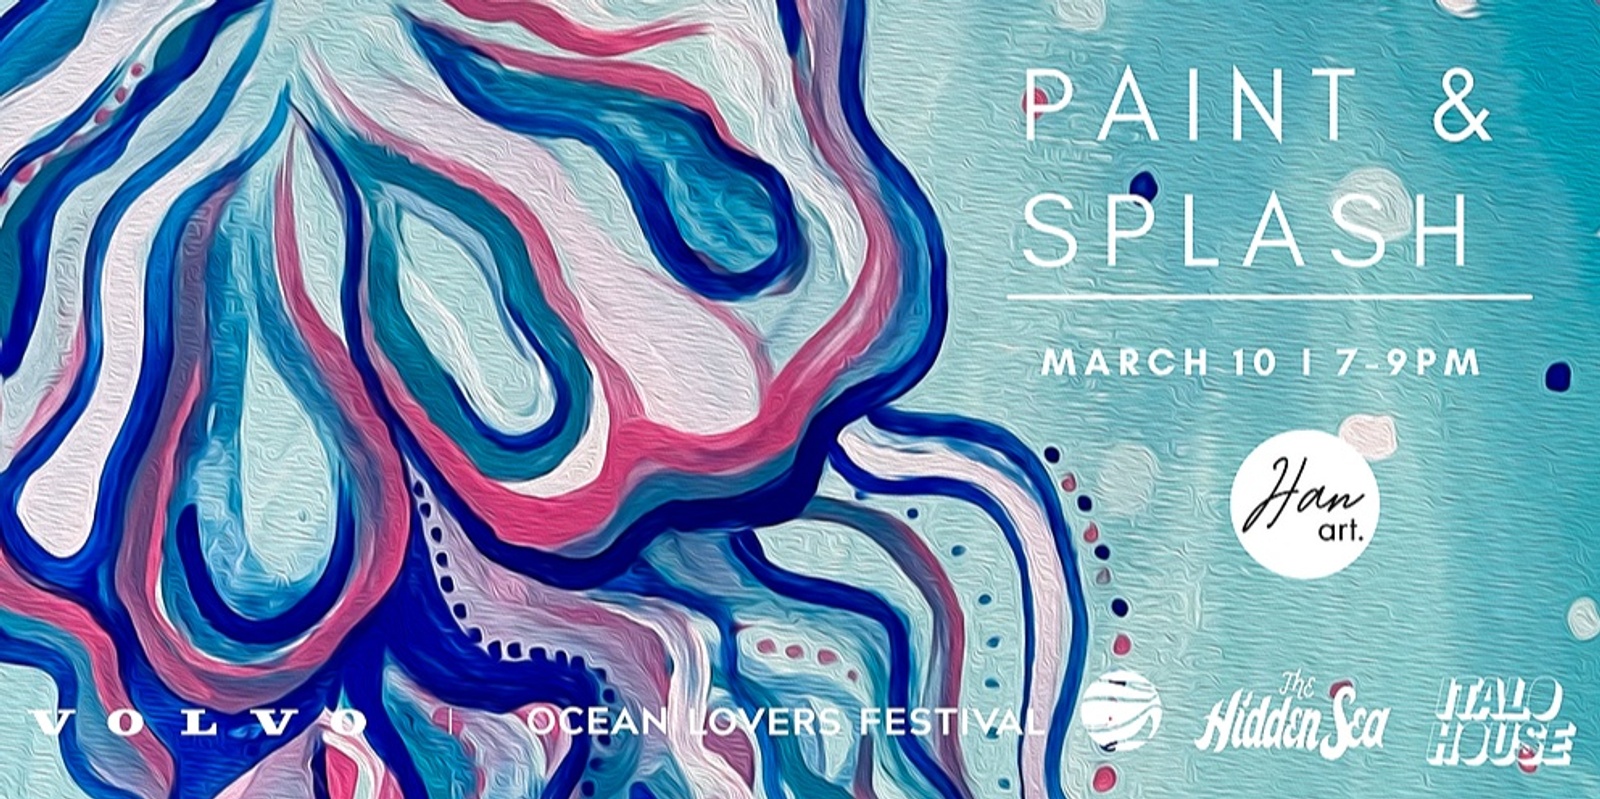 Banner image for Volvo Ocean Lovers Festival Paint & Splash!